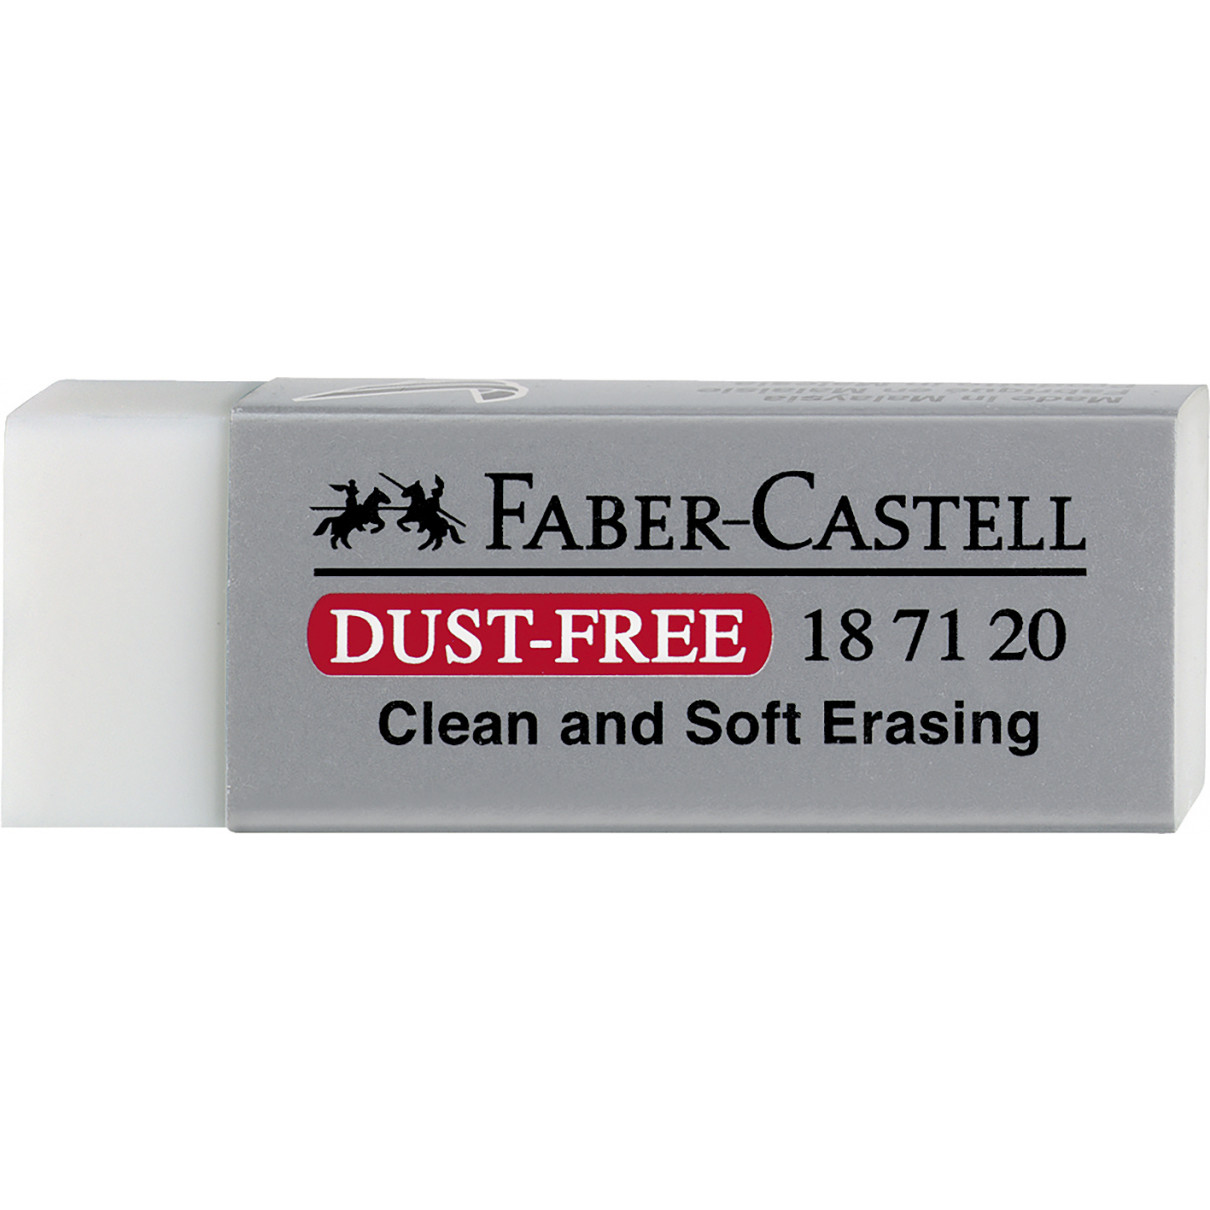 Faber-Castell Dust-free Eraser